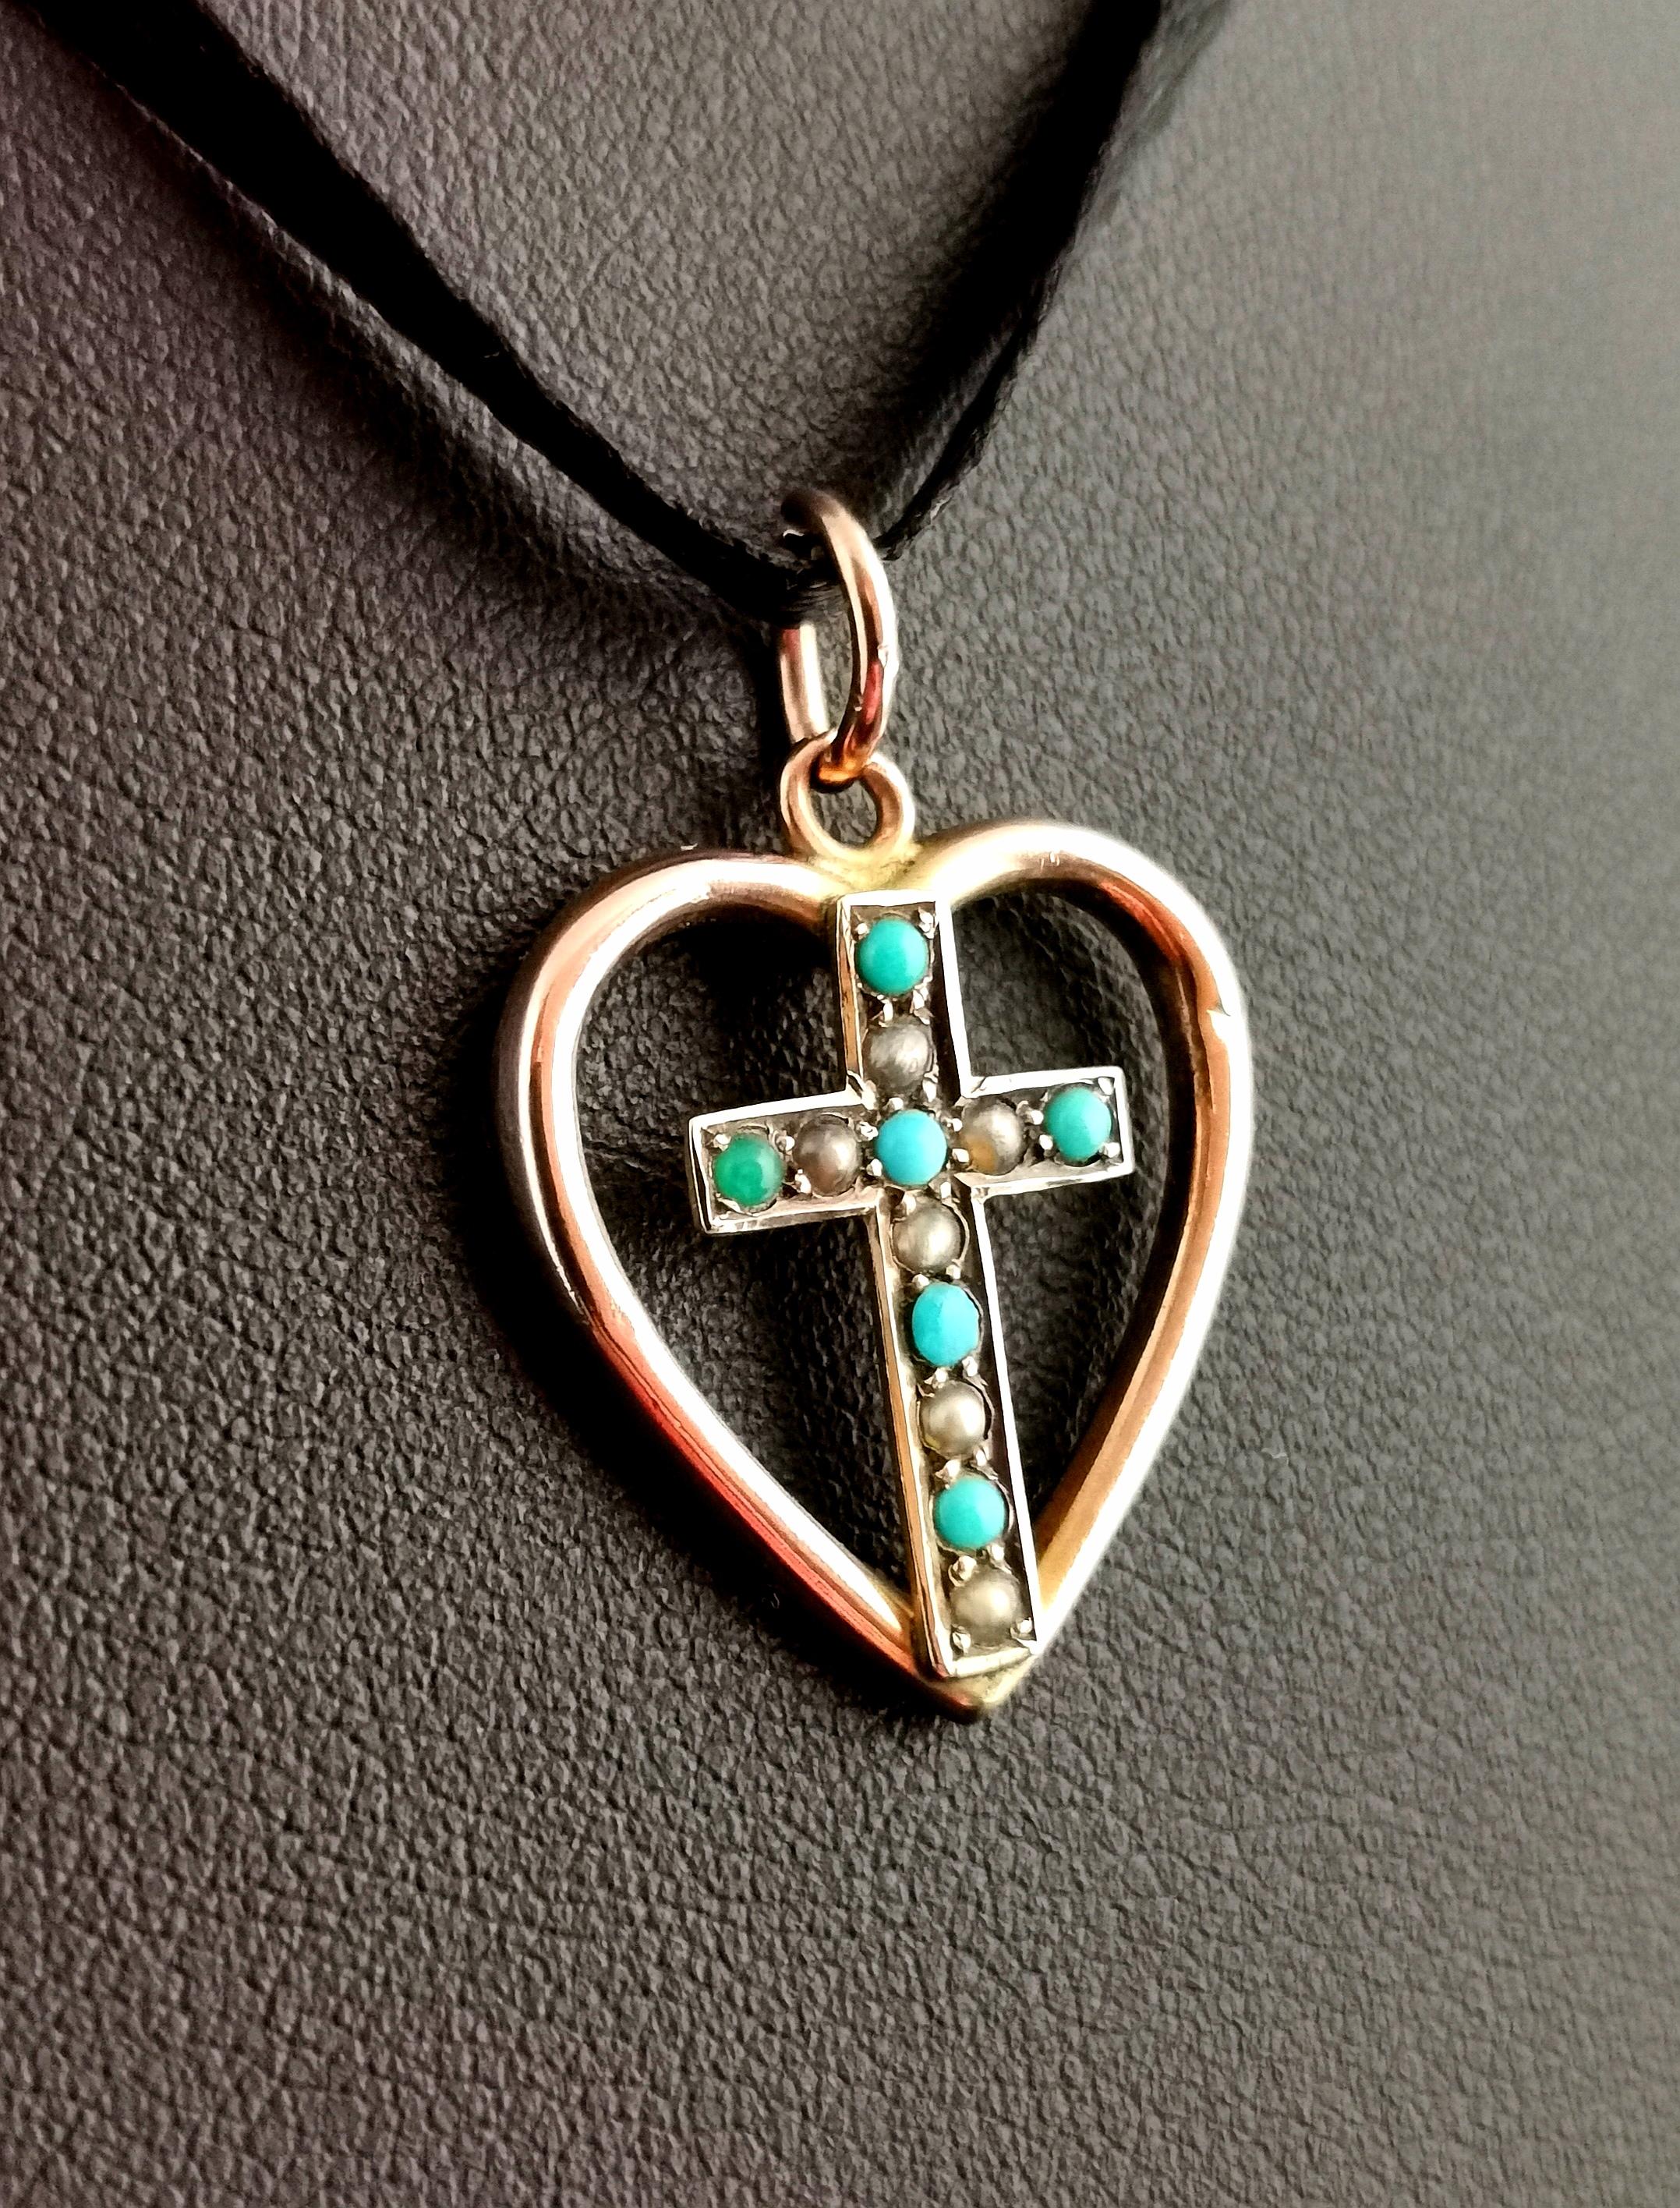 Taille cabochon Pendentif ancien en forme de cœur et de croix, en or rose 9 carats, turquoise et perles naturelles